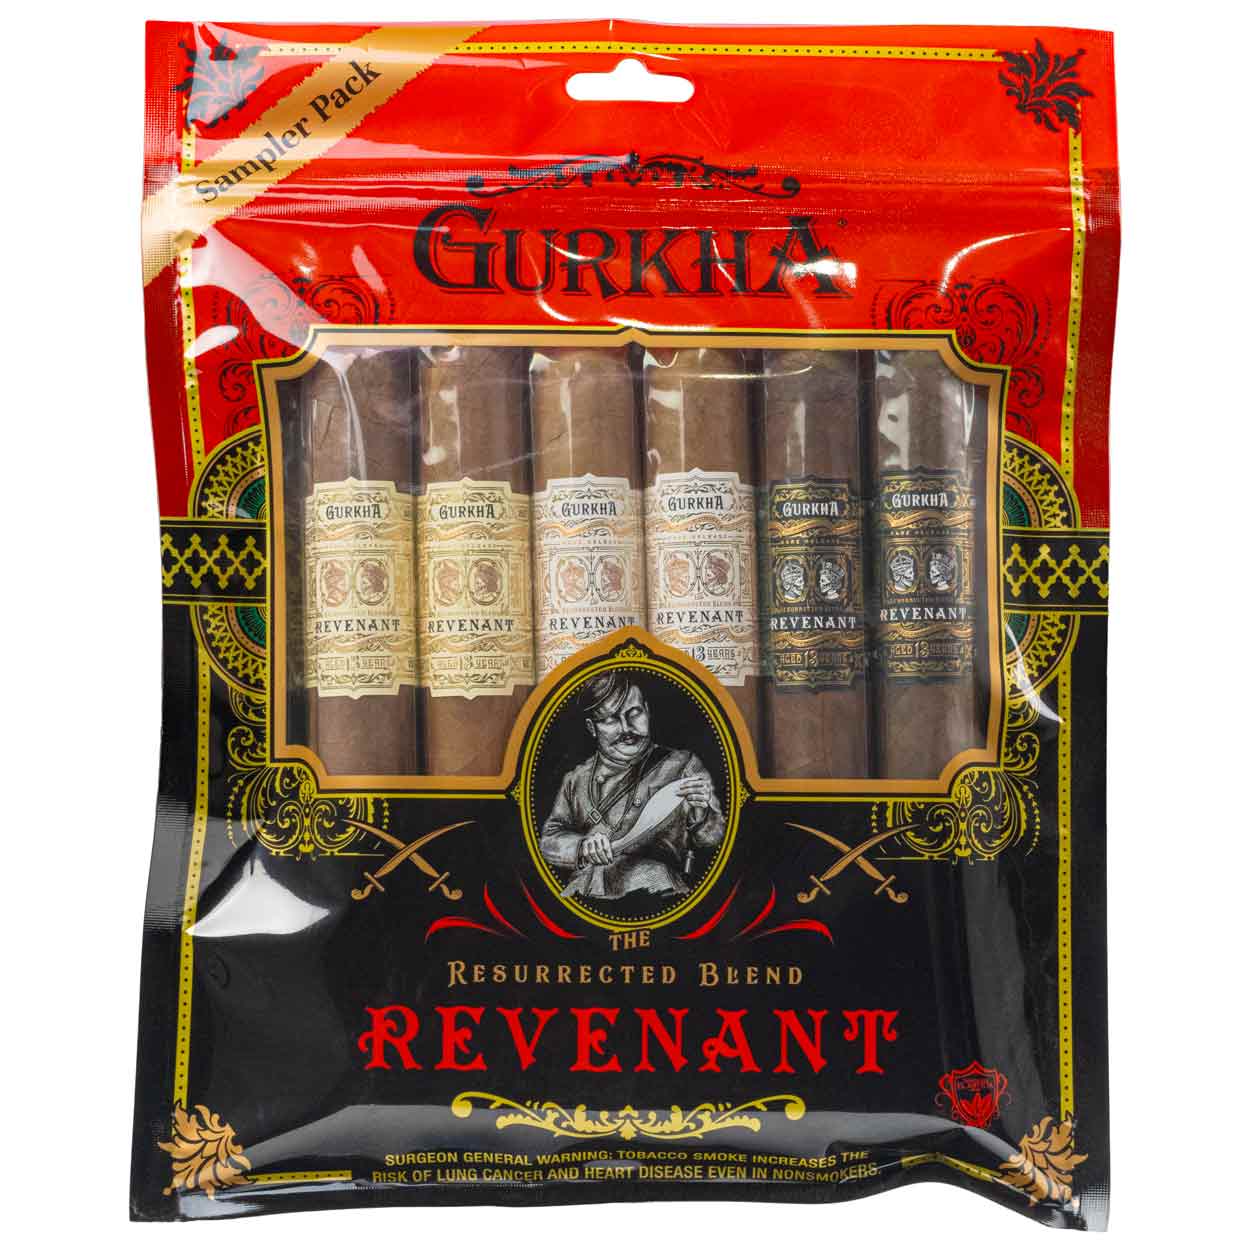 Gurkha revenant sampler with full packaging